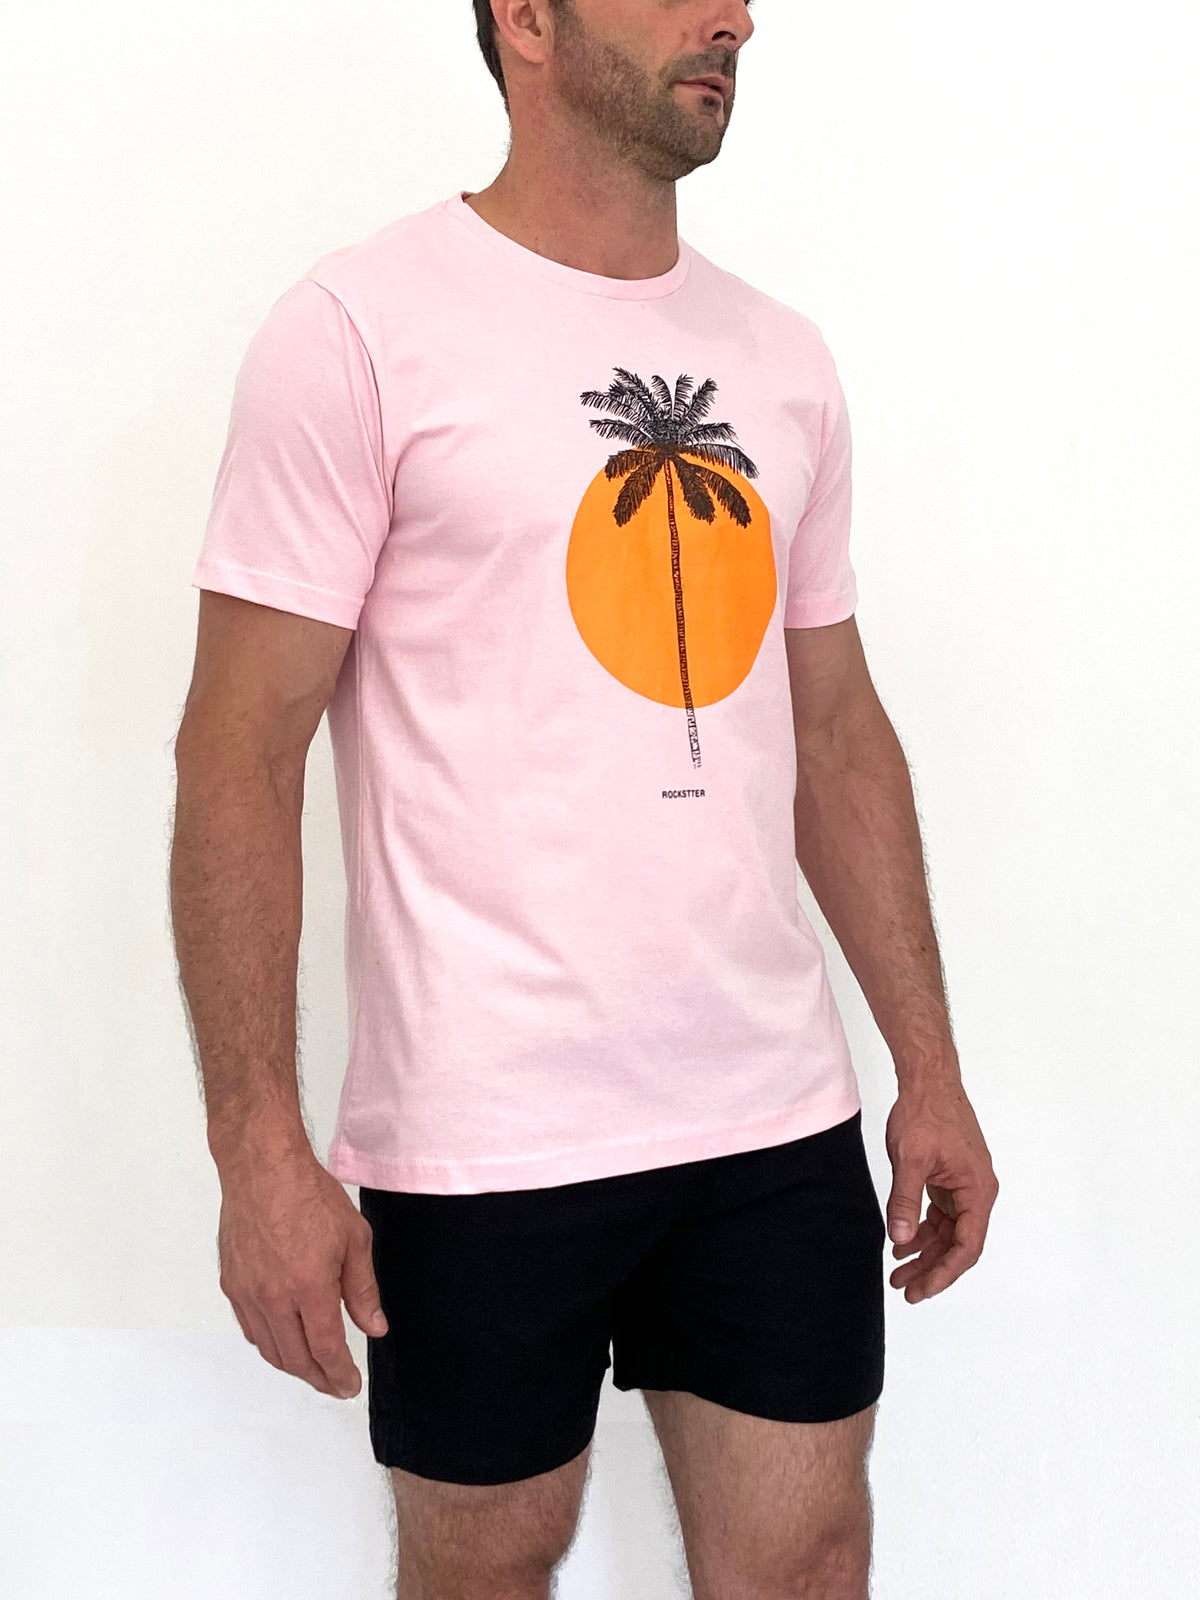 Camiseta Estampada Solar